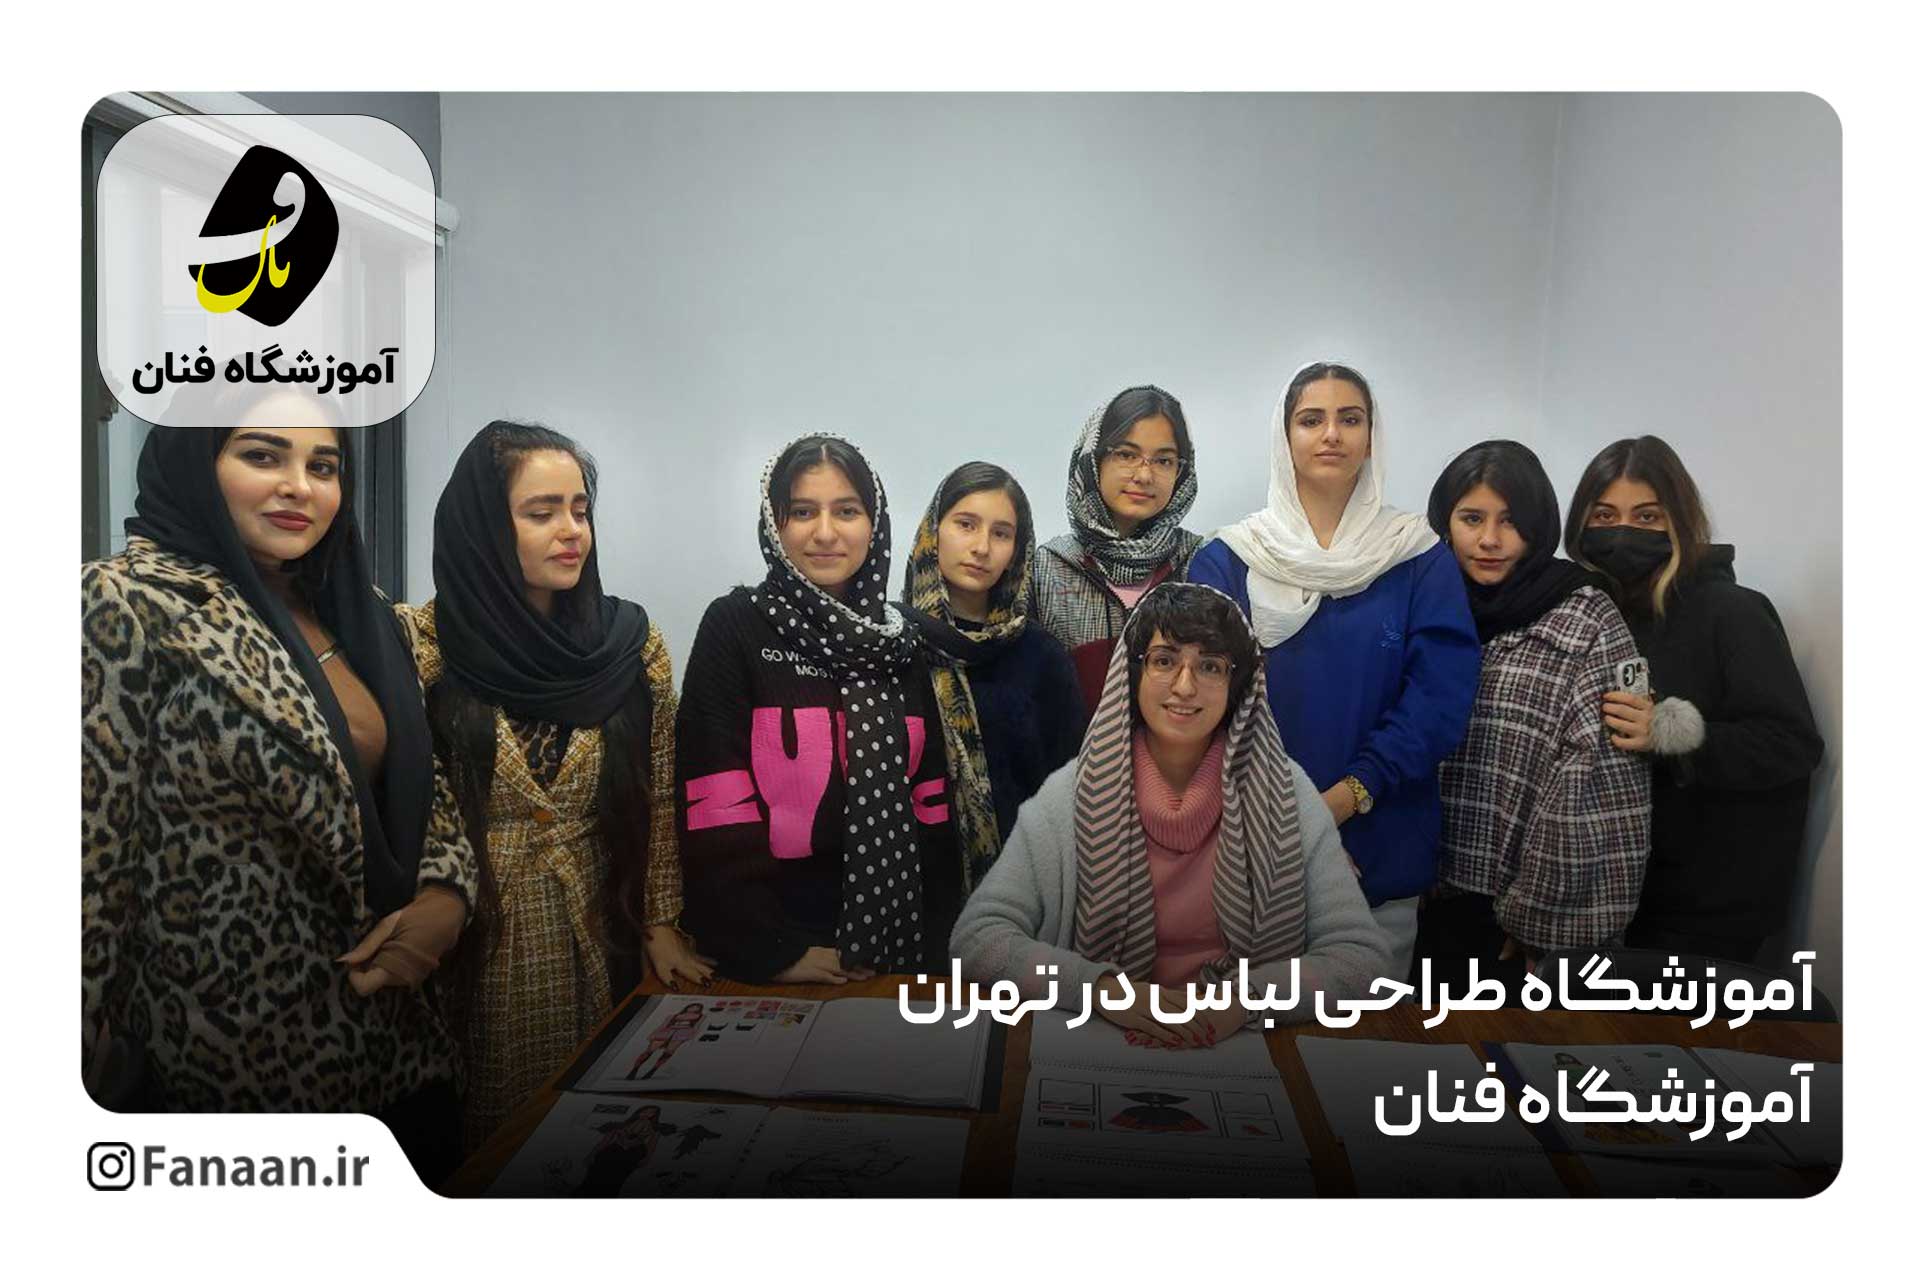 آموزشگاه طراحی لباس در تهران